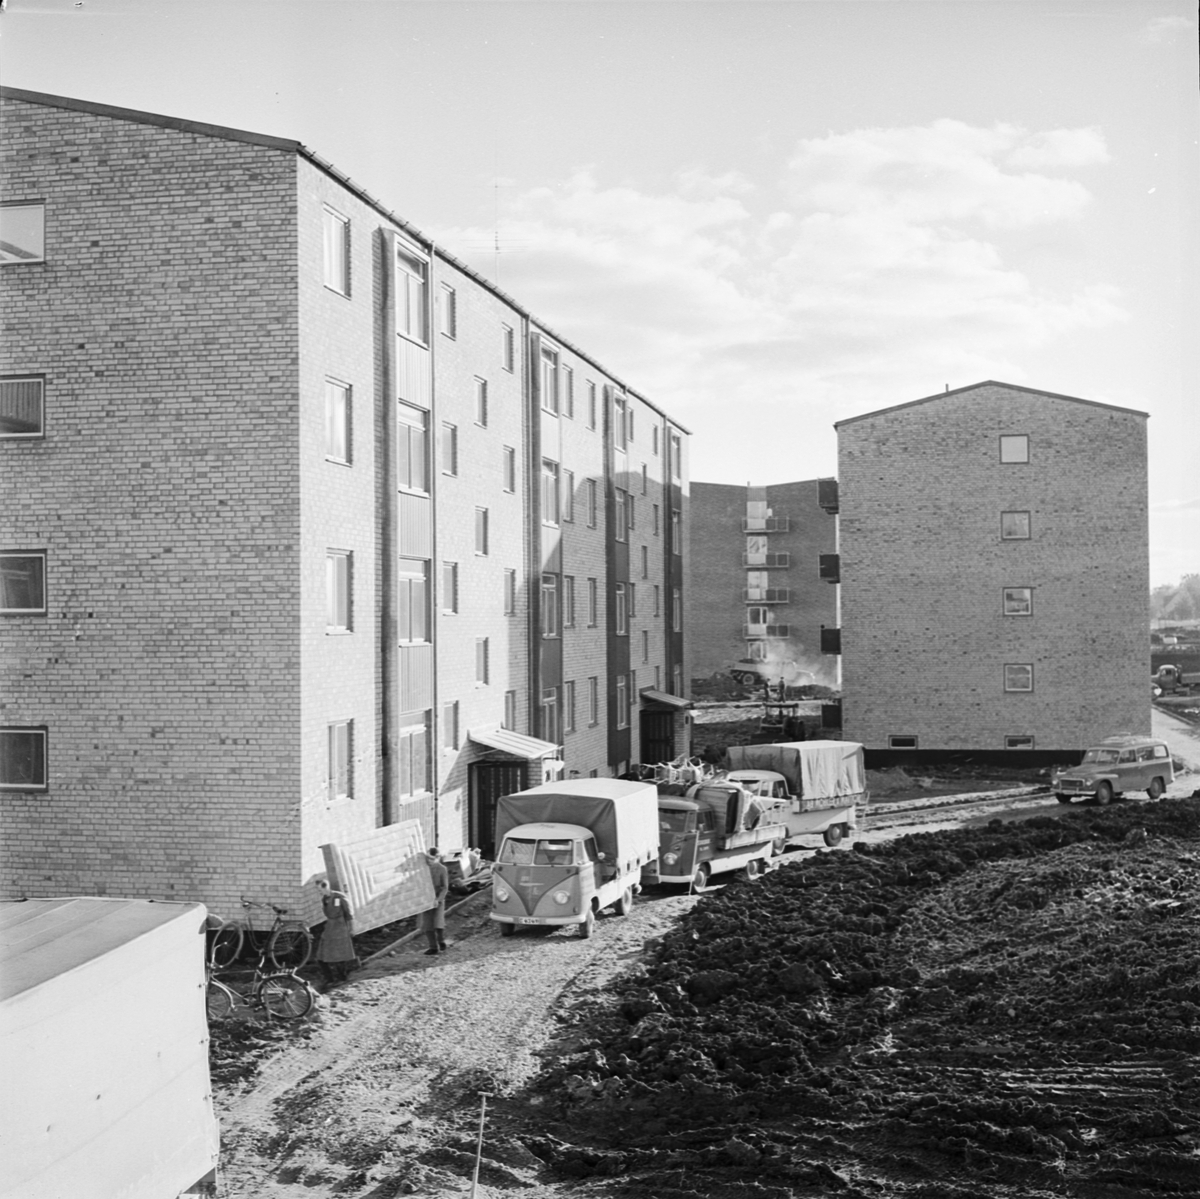 Karlsroområdet befolkat, barnstugan öppnar måndag, Uppsala 1960